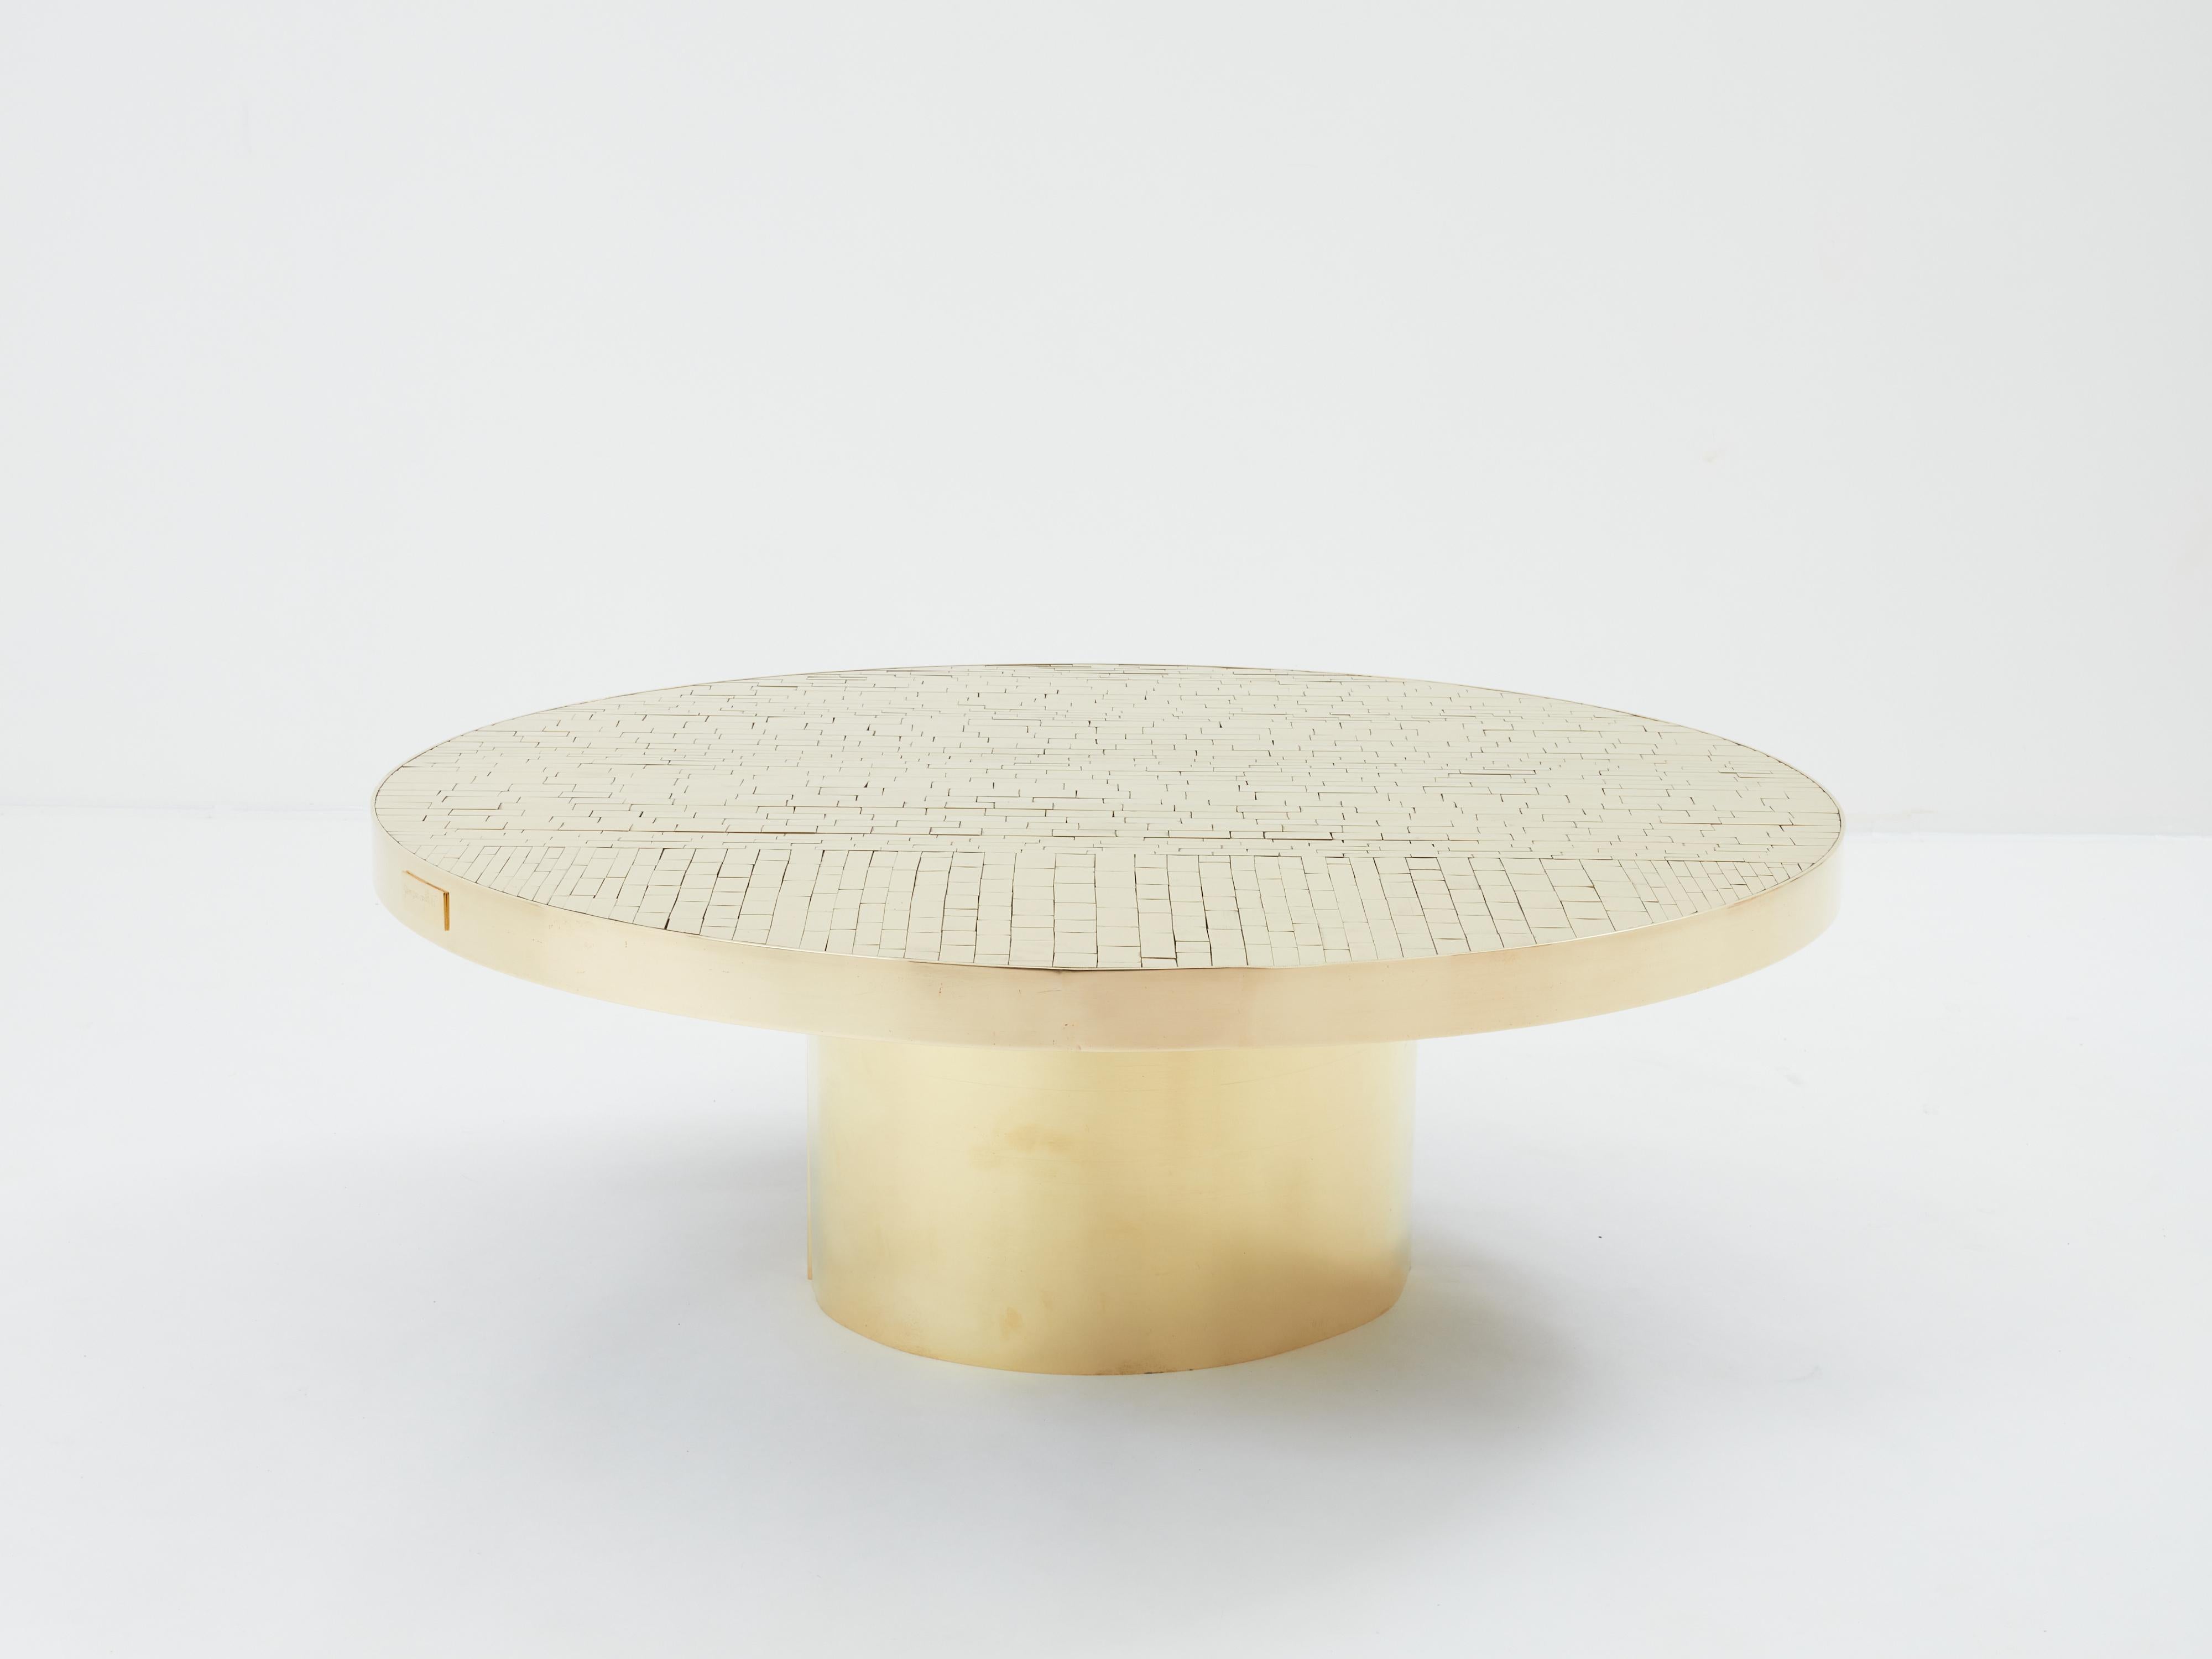 Il s'agit d'une table basse ronde belge unique, signée par Georges Mathias et produite à la fin des années 1970. La table présente un étonnant plateau en mosaïque composé de pavés de laiton poli, entouré d'un cerclage en laiton comportant une plaque